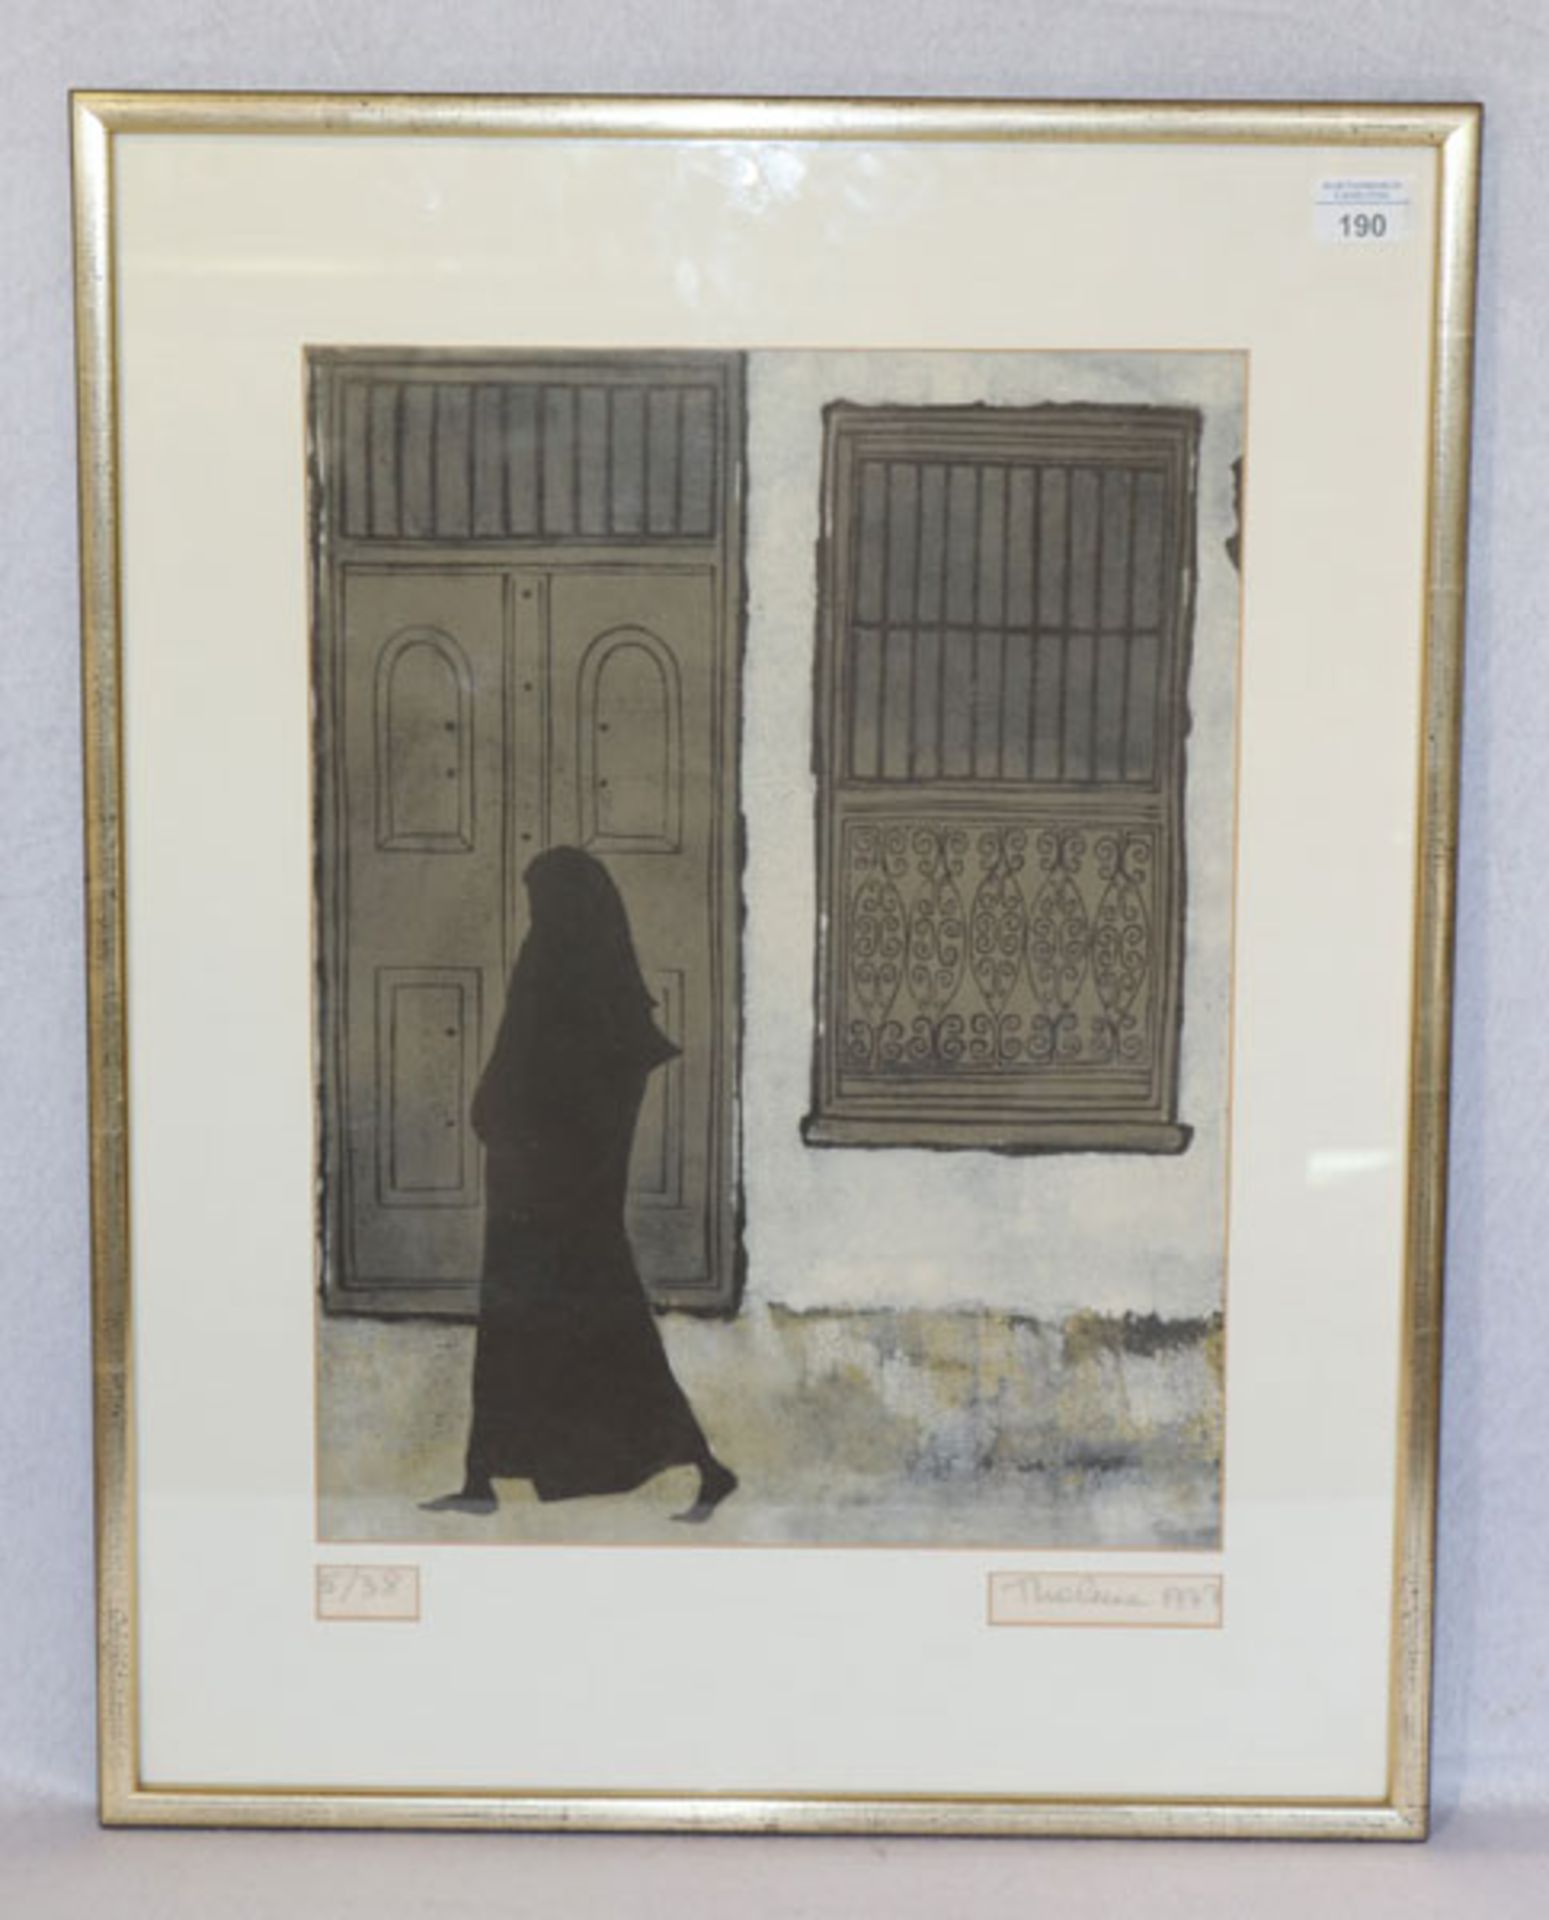 Holzschnitt ''Arabische Szenerie', Nr. 5/38, signiert Thelma ?, 1977, mit Passepartout gerahmt,